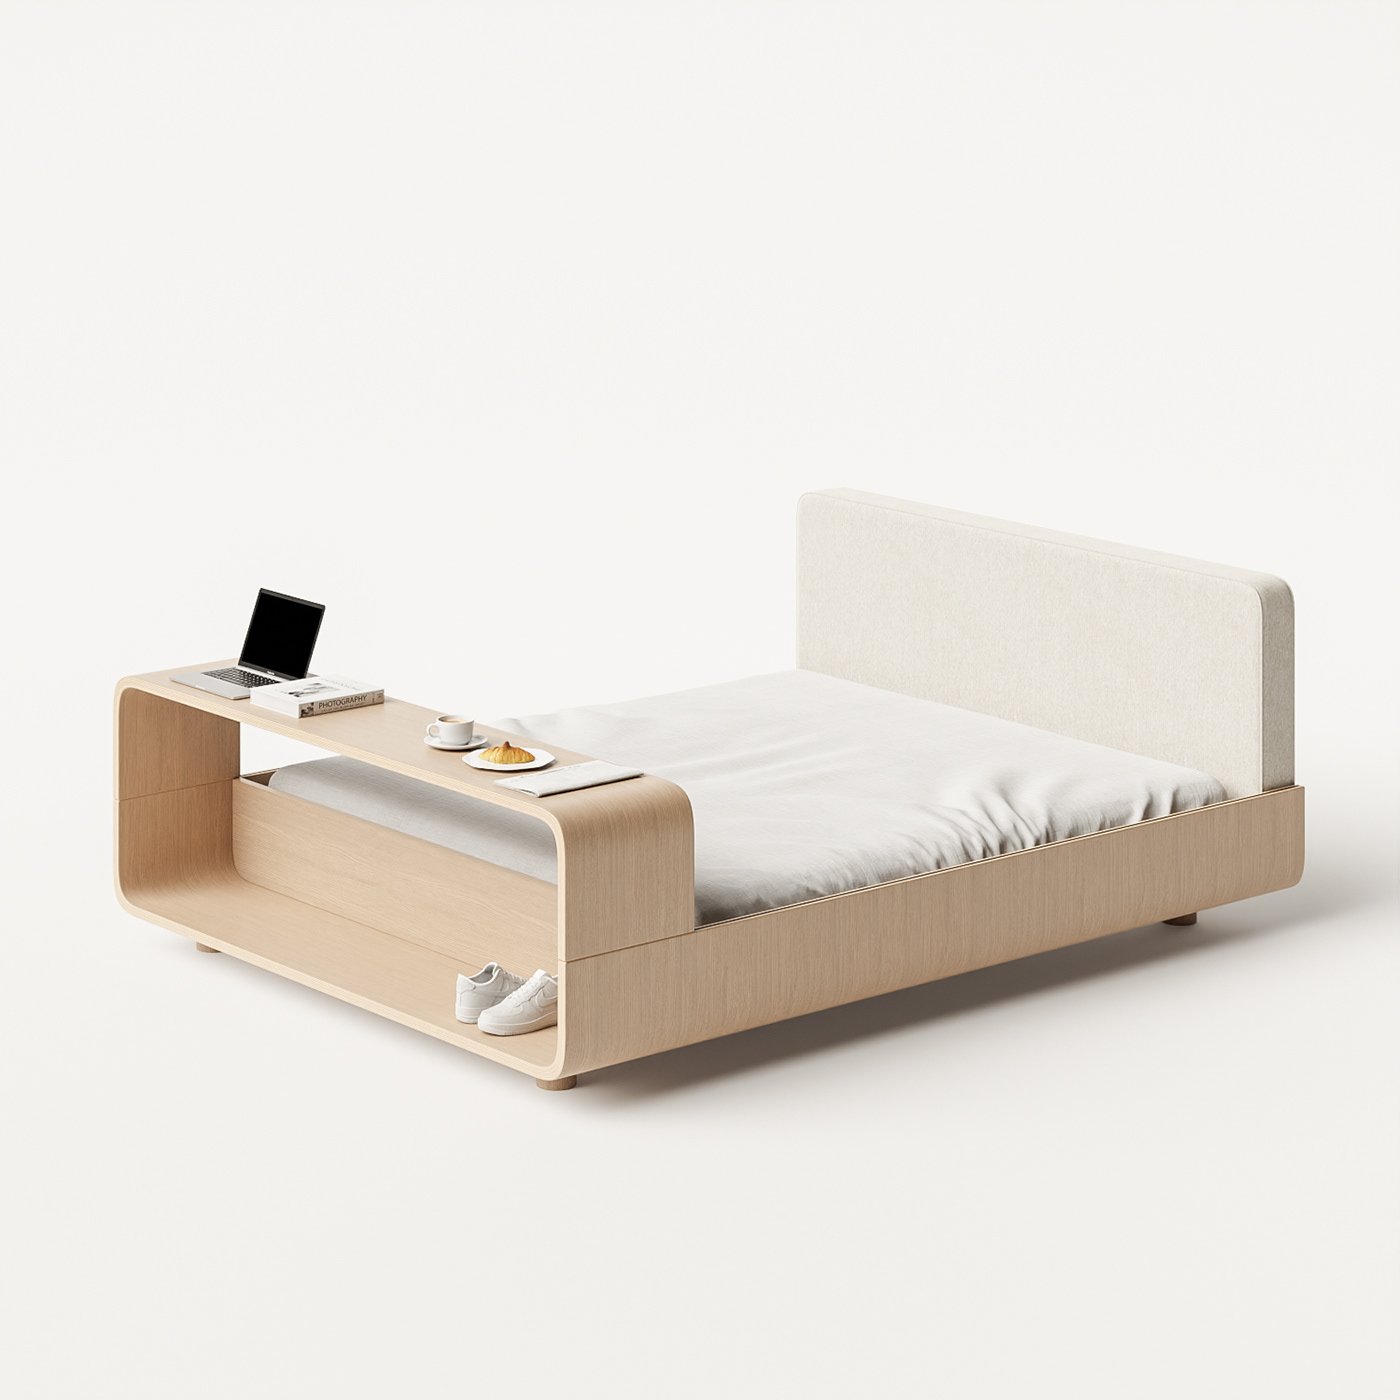 bed design bed furniture bedroom industrial design  minimal furniture modern furniture Multifunctional Furniture product design  wood furniture